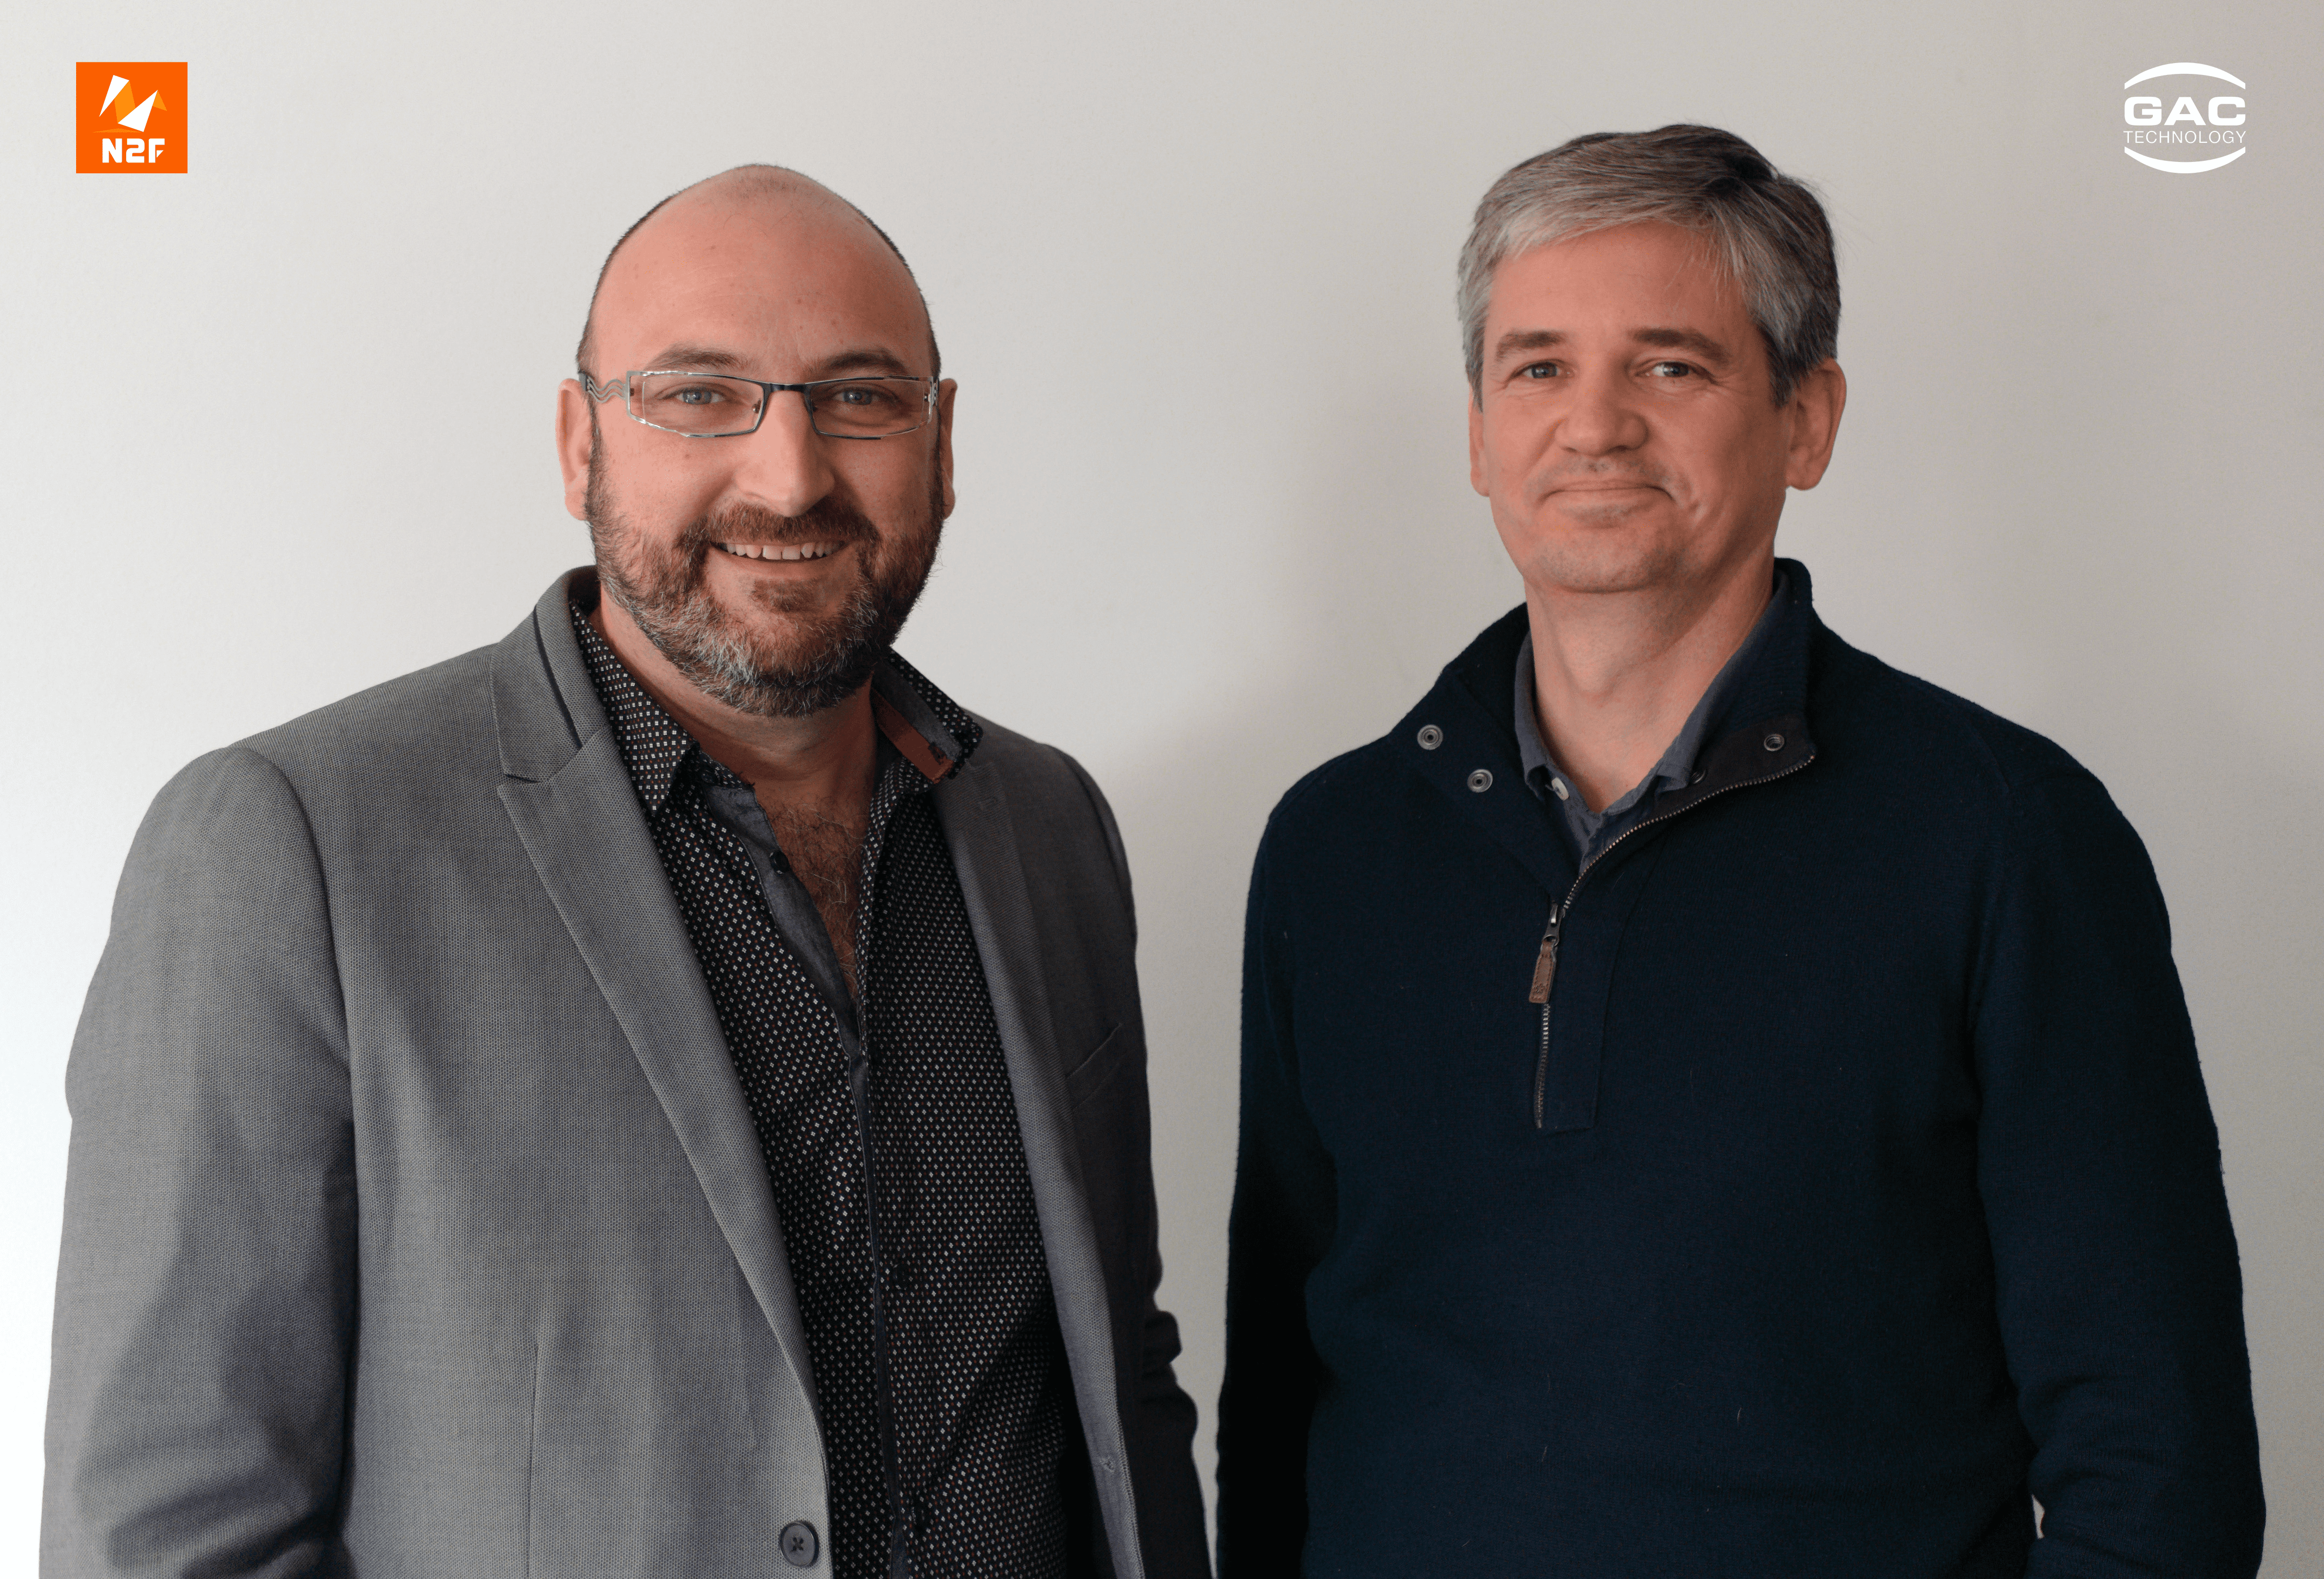 Nicolas Dubouloz et Géraud Porteu, Directeurs de N2F et GAC Technology